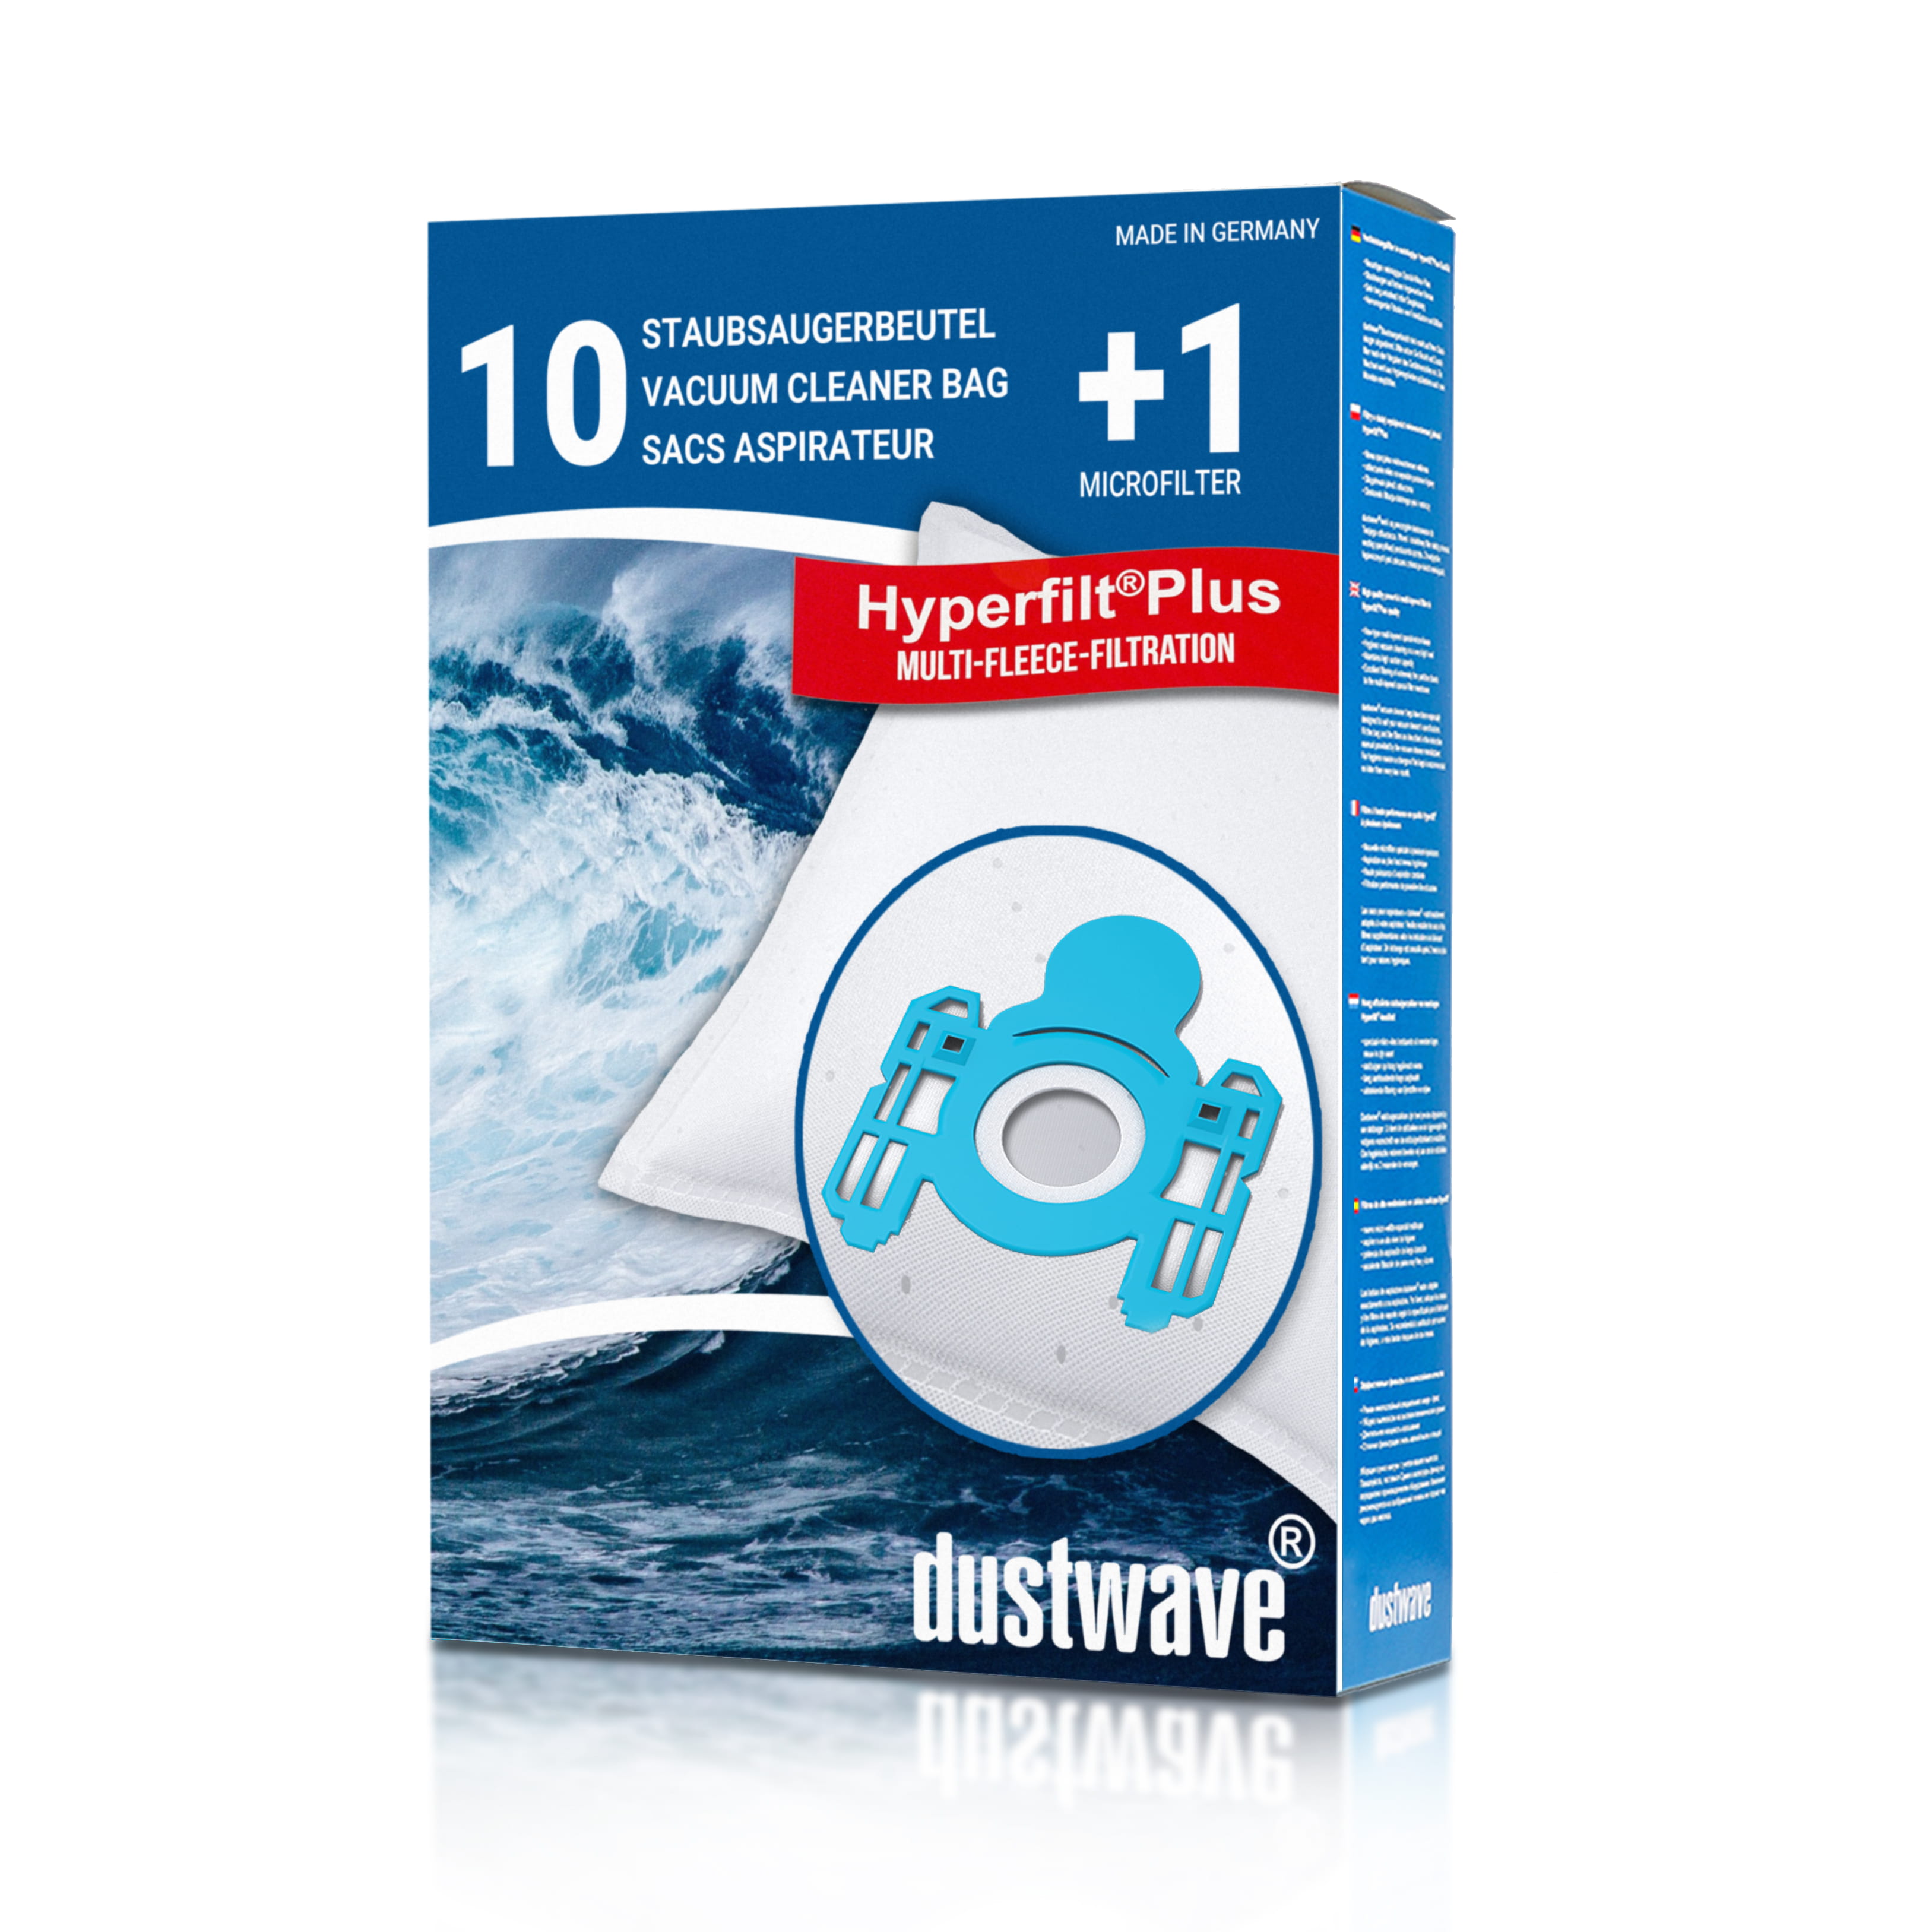 Dustwave® 10 Staubsaugerbeutel für AEG Vampyr Sun / Sun. 3 Electronic - hocheffizient, mehrlagiges Mikrovlies mit Hygieneverschluss - Made in Germany